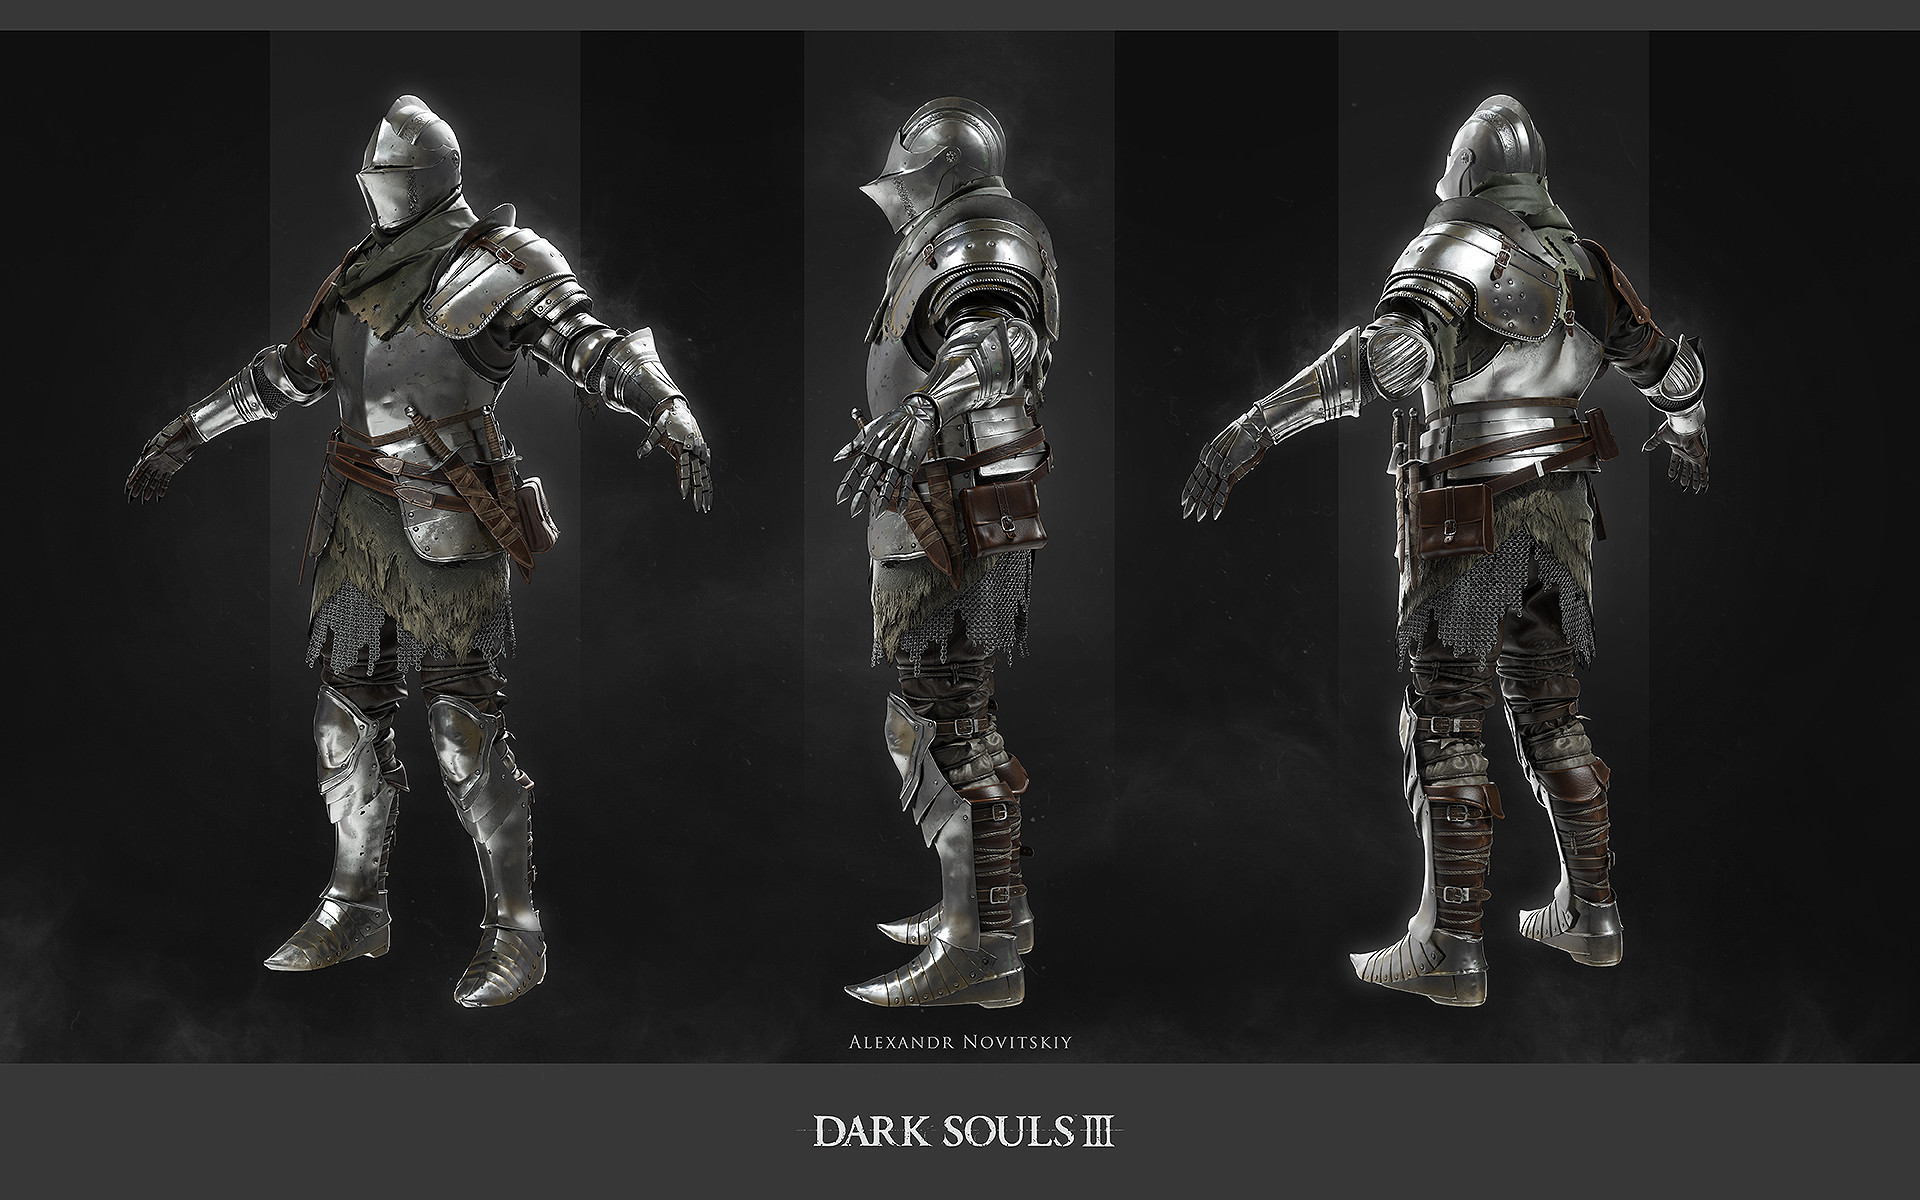 General 1920x1200 Alexandr Novitskiy CGI Dark Souls III armor knight Dark Souls From Software video games video game art fantasy armor fantasy art